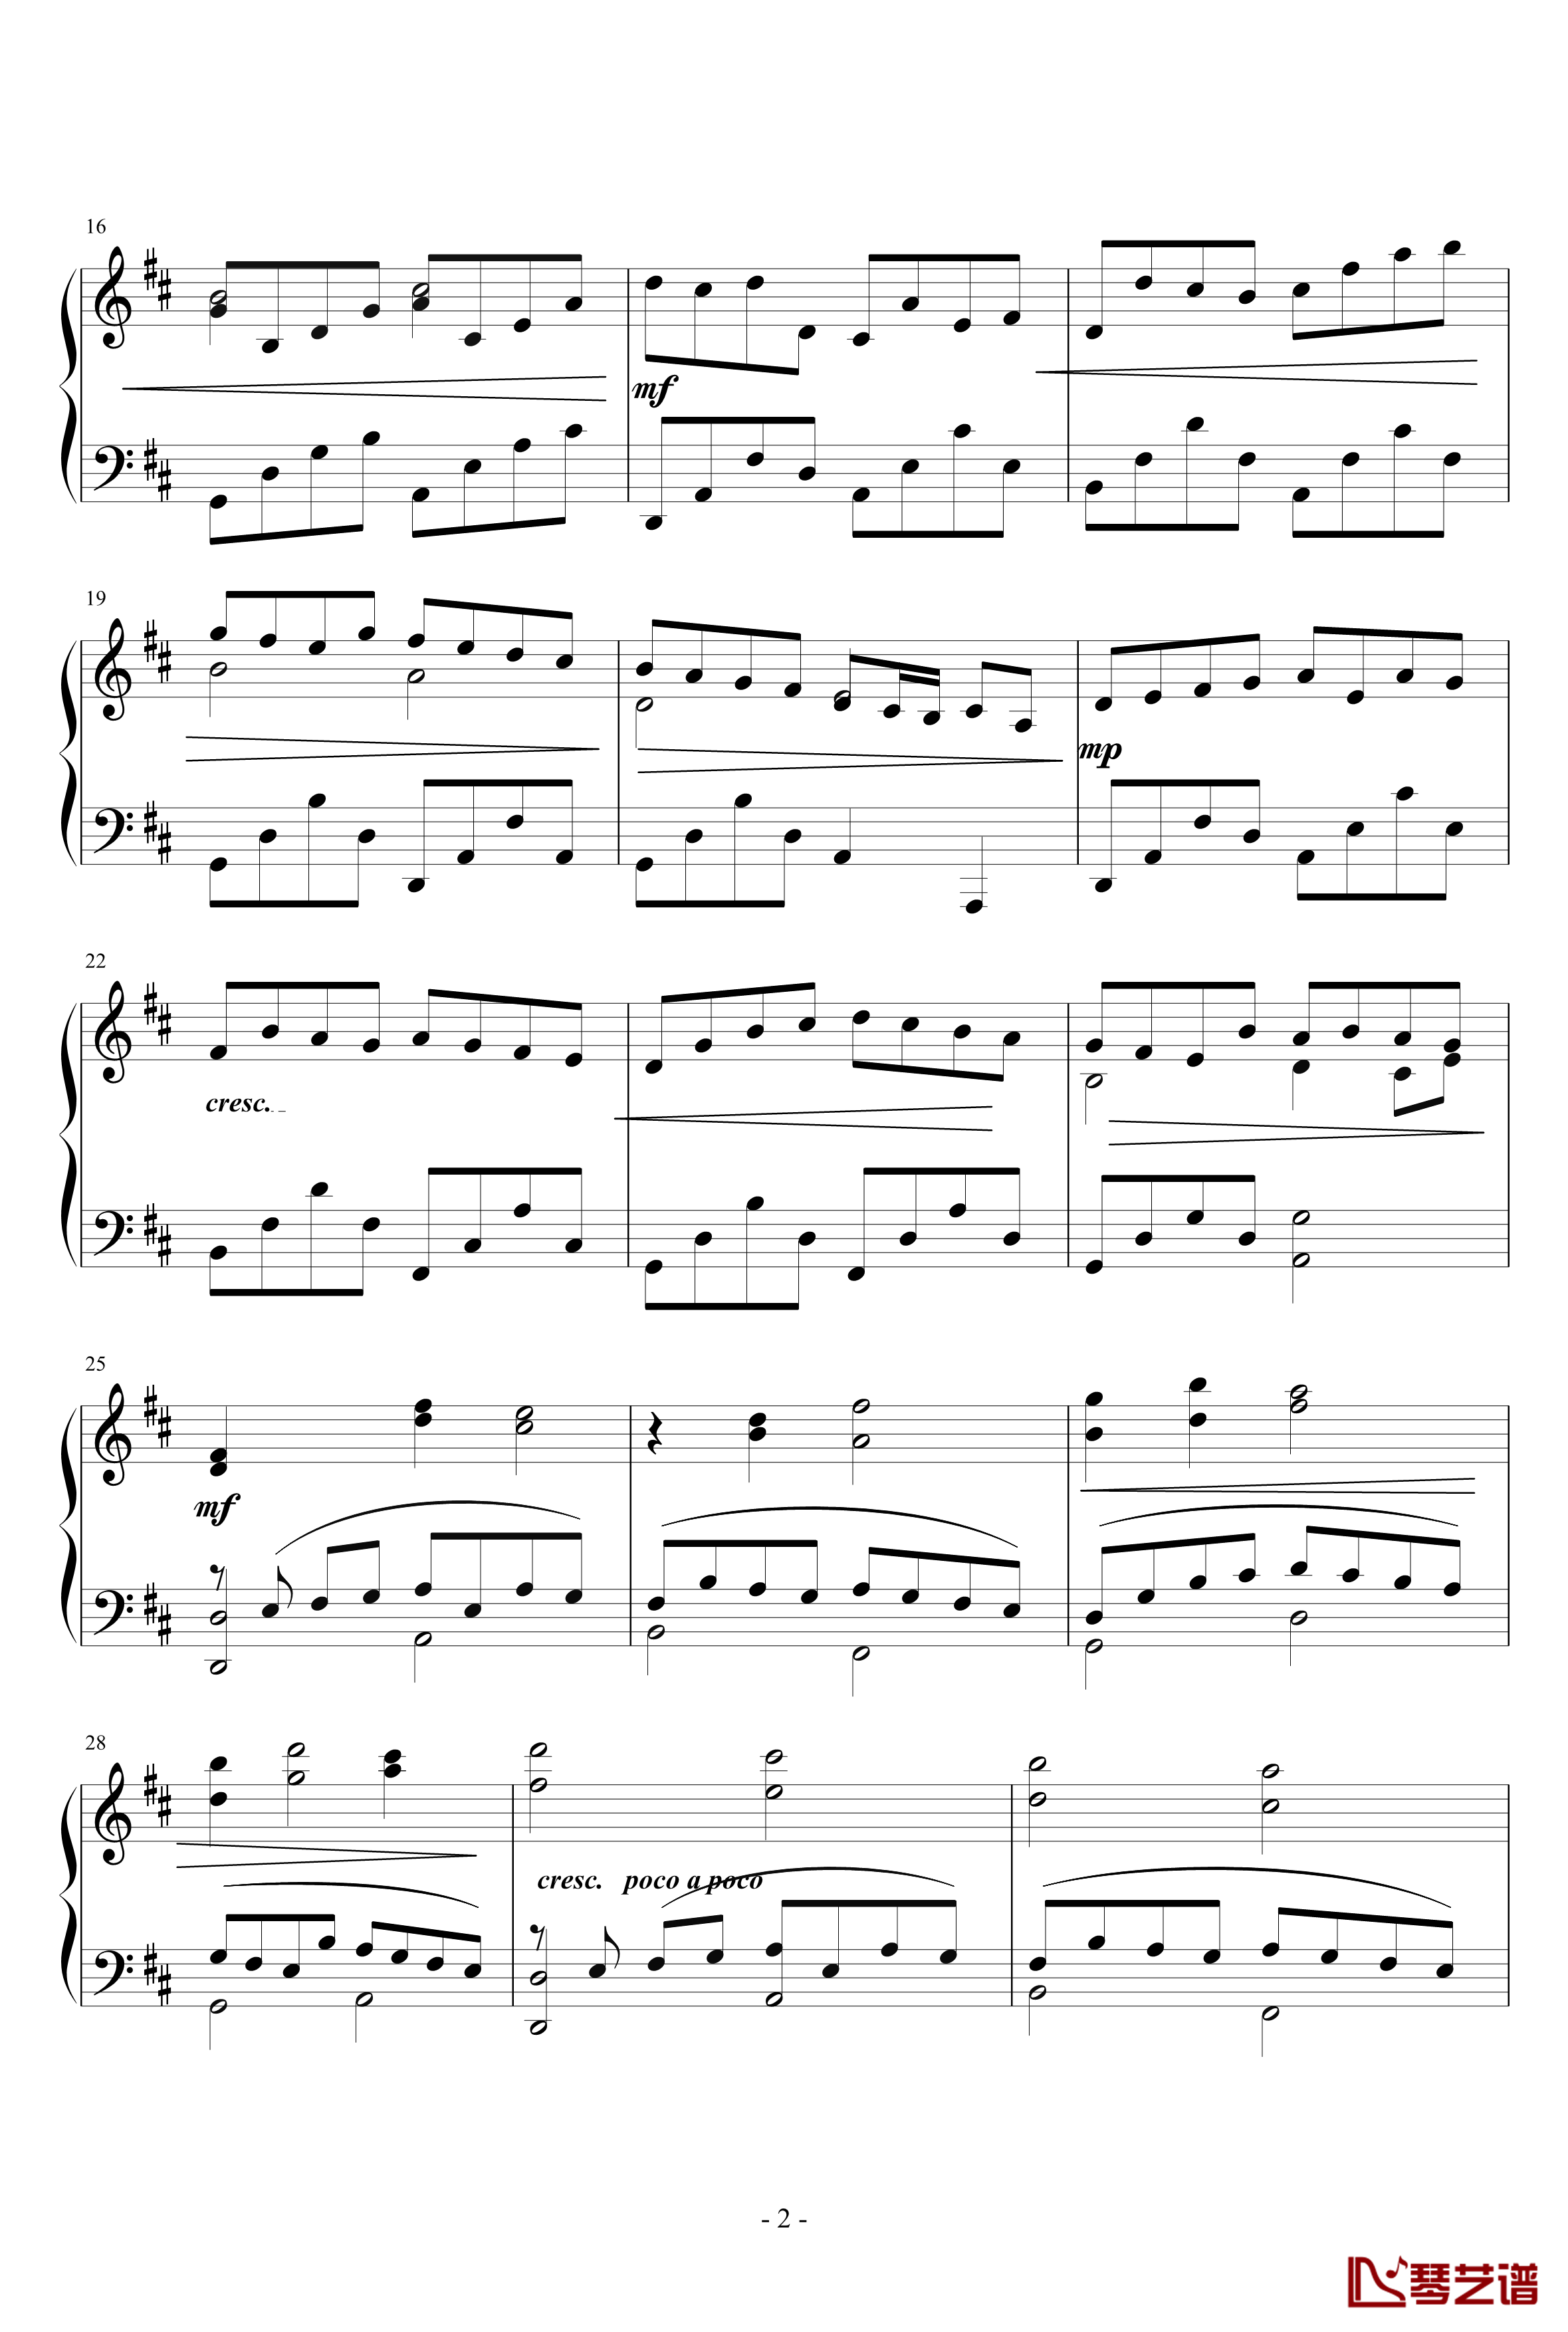 卡农正版钢琴谱-帕赫贝尔-Pachelbel2